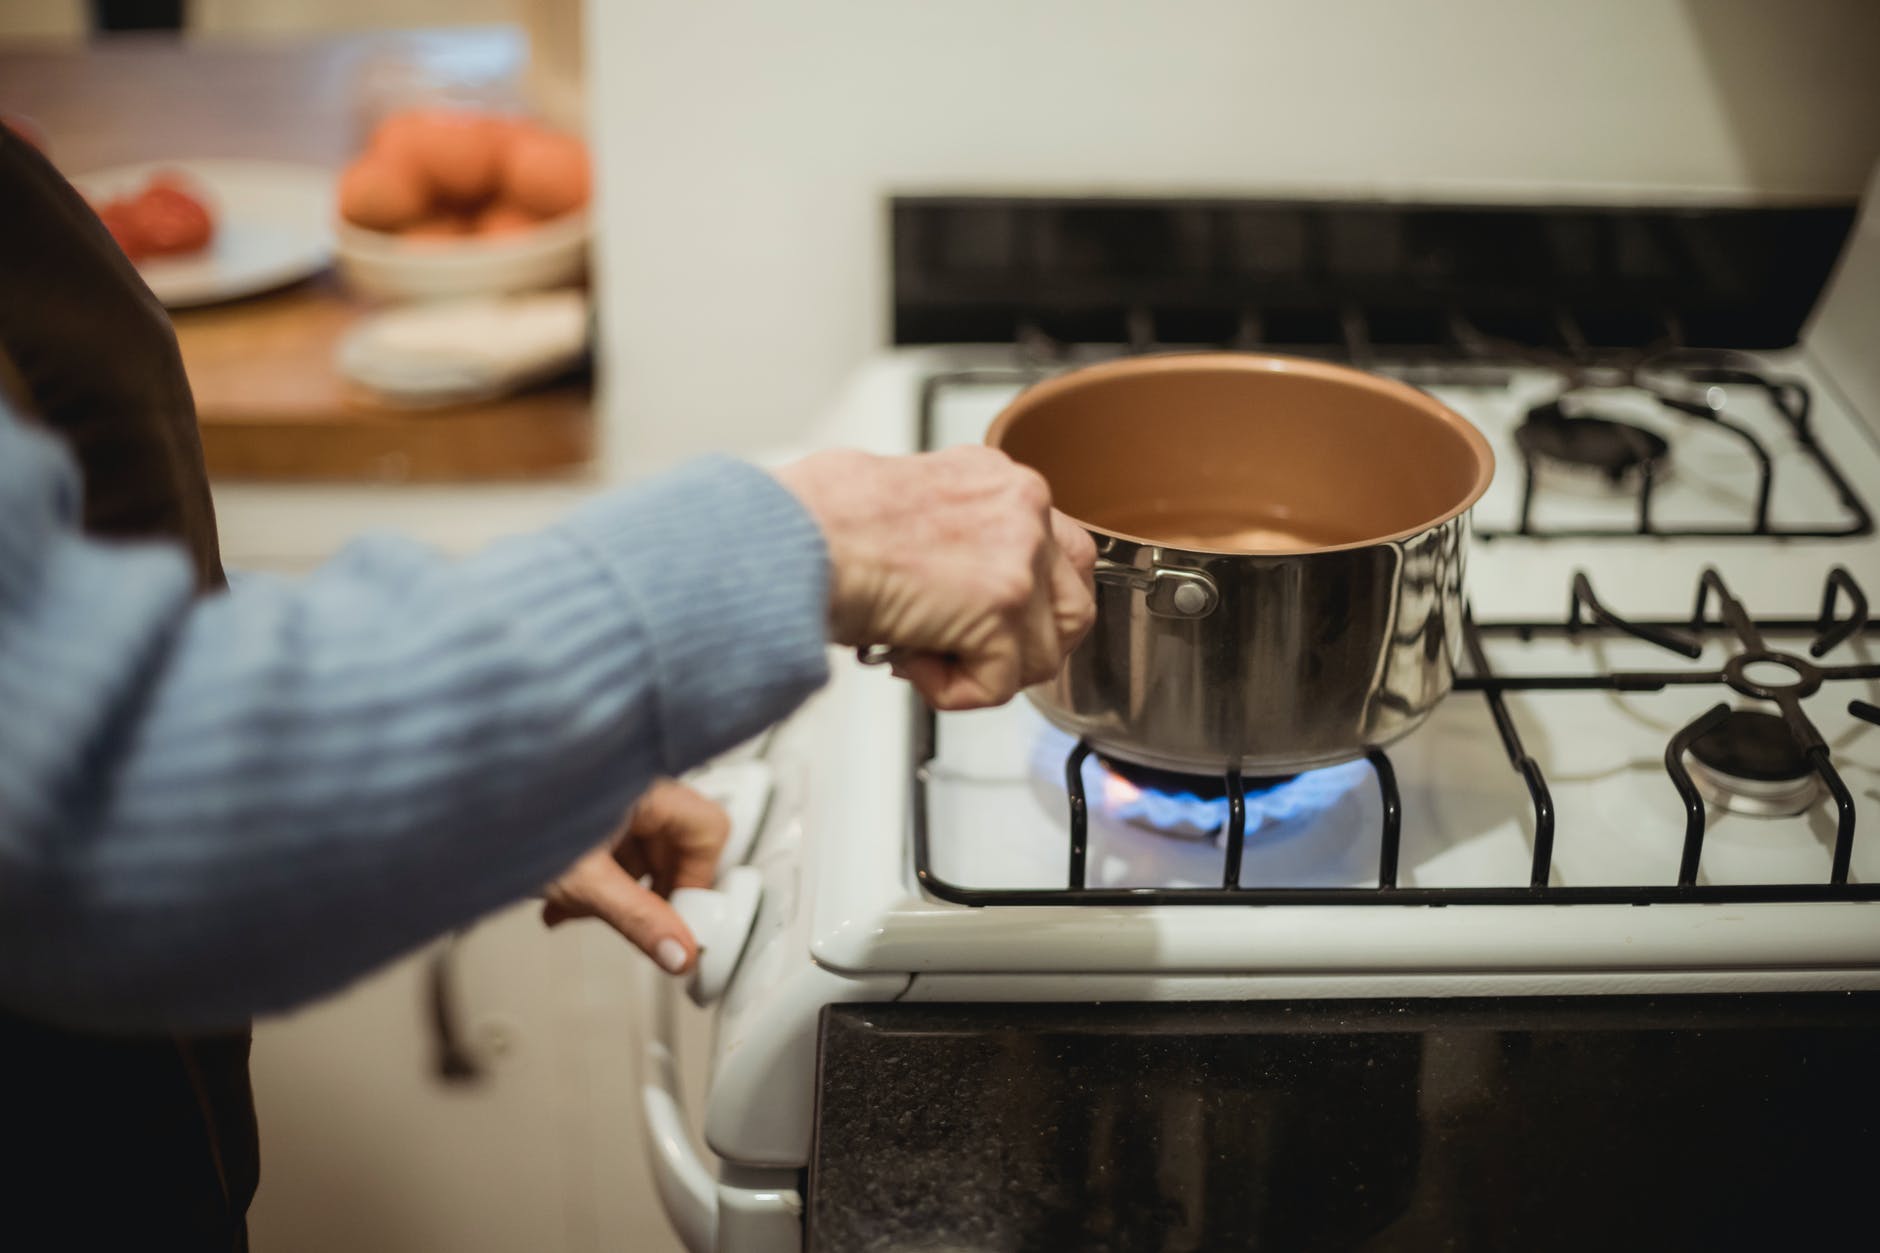 Aprenda a economizar gás de cozinha com essas dicas caseiras.